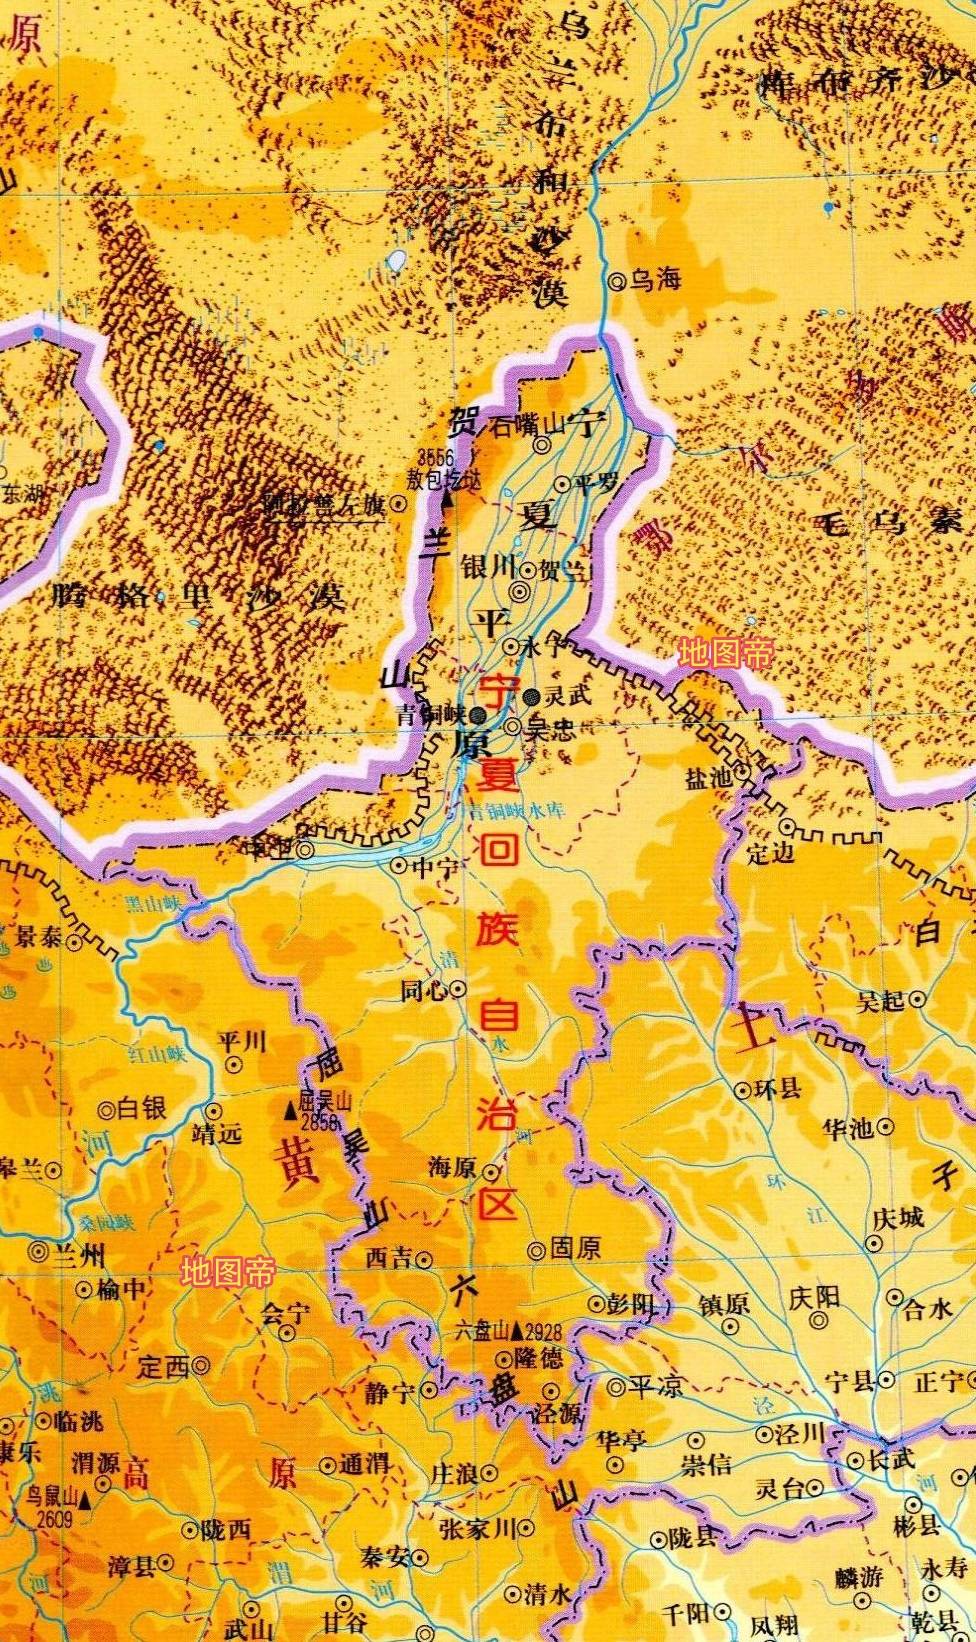 7张地形图,快速了解宁夏首府银川市